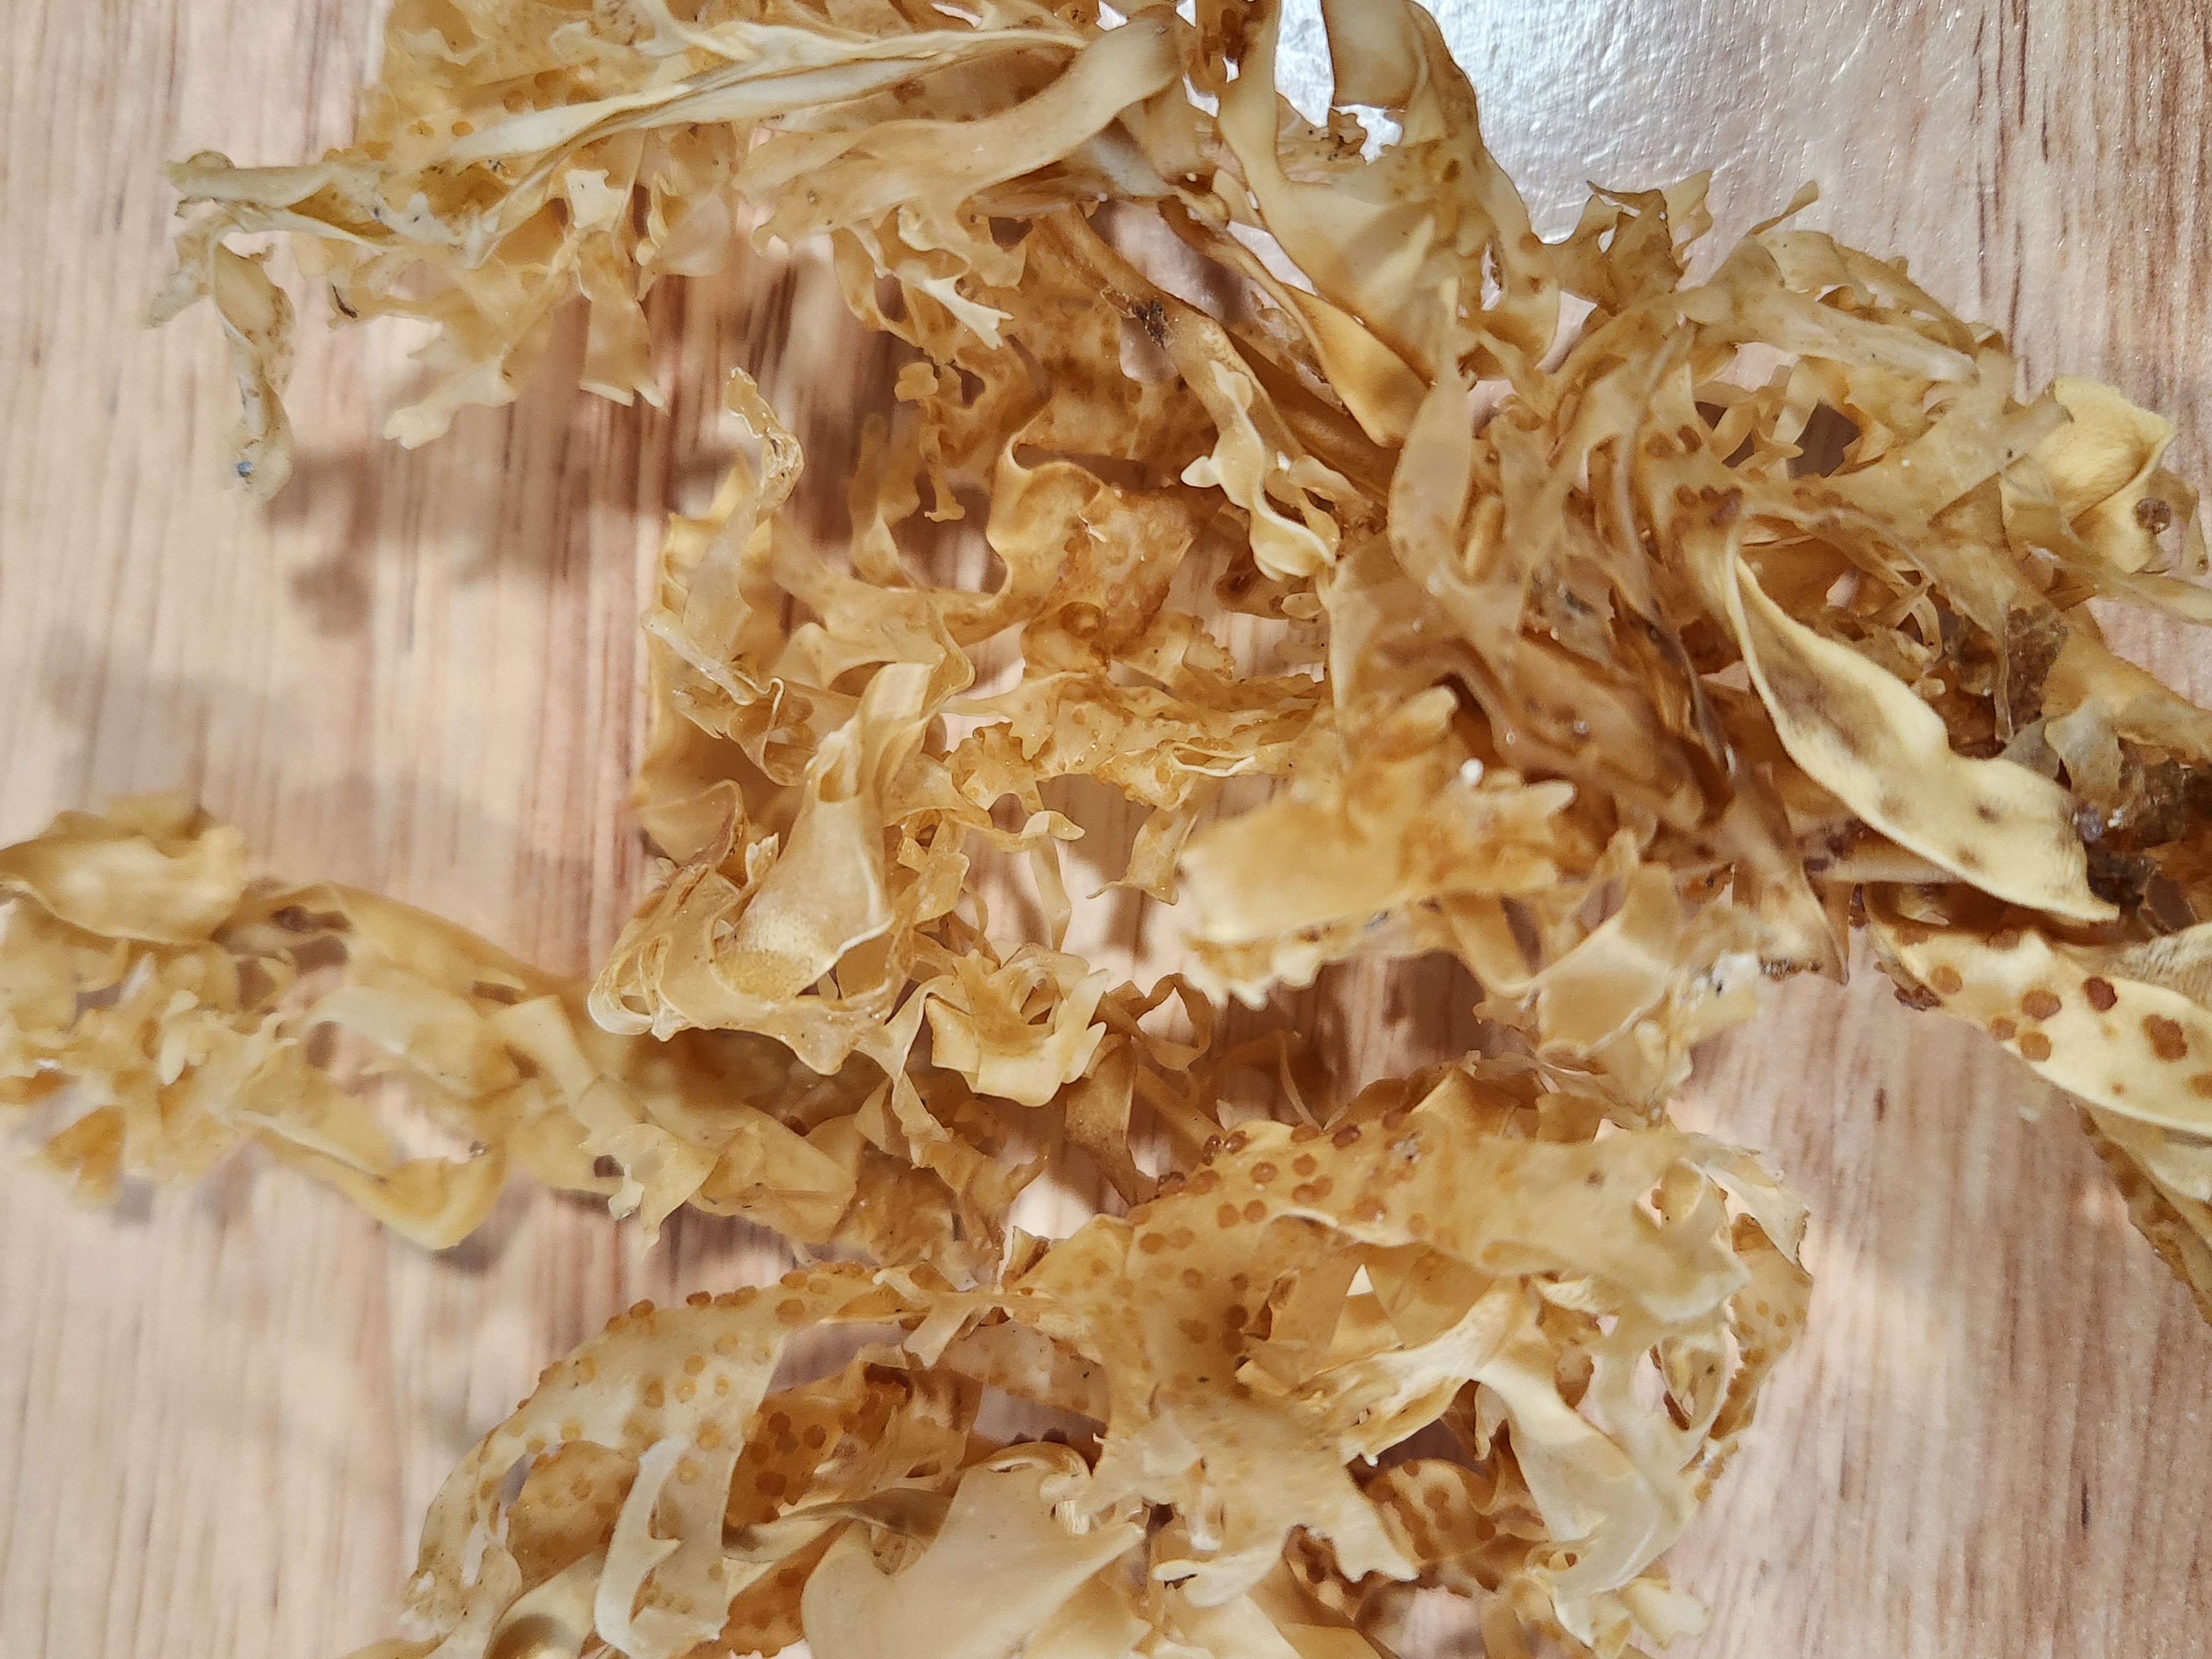 Hair Grow Premium Sea Moss Oil